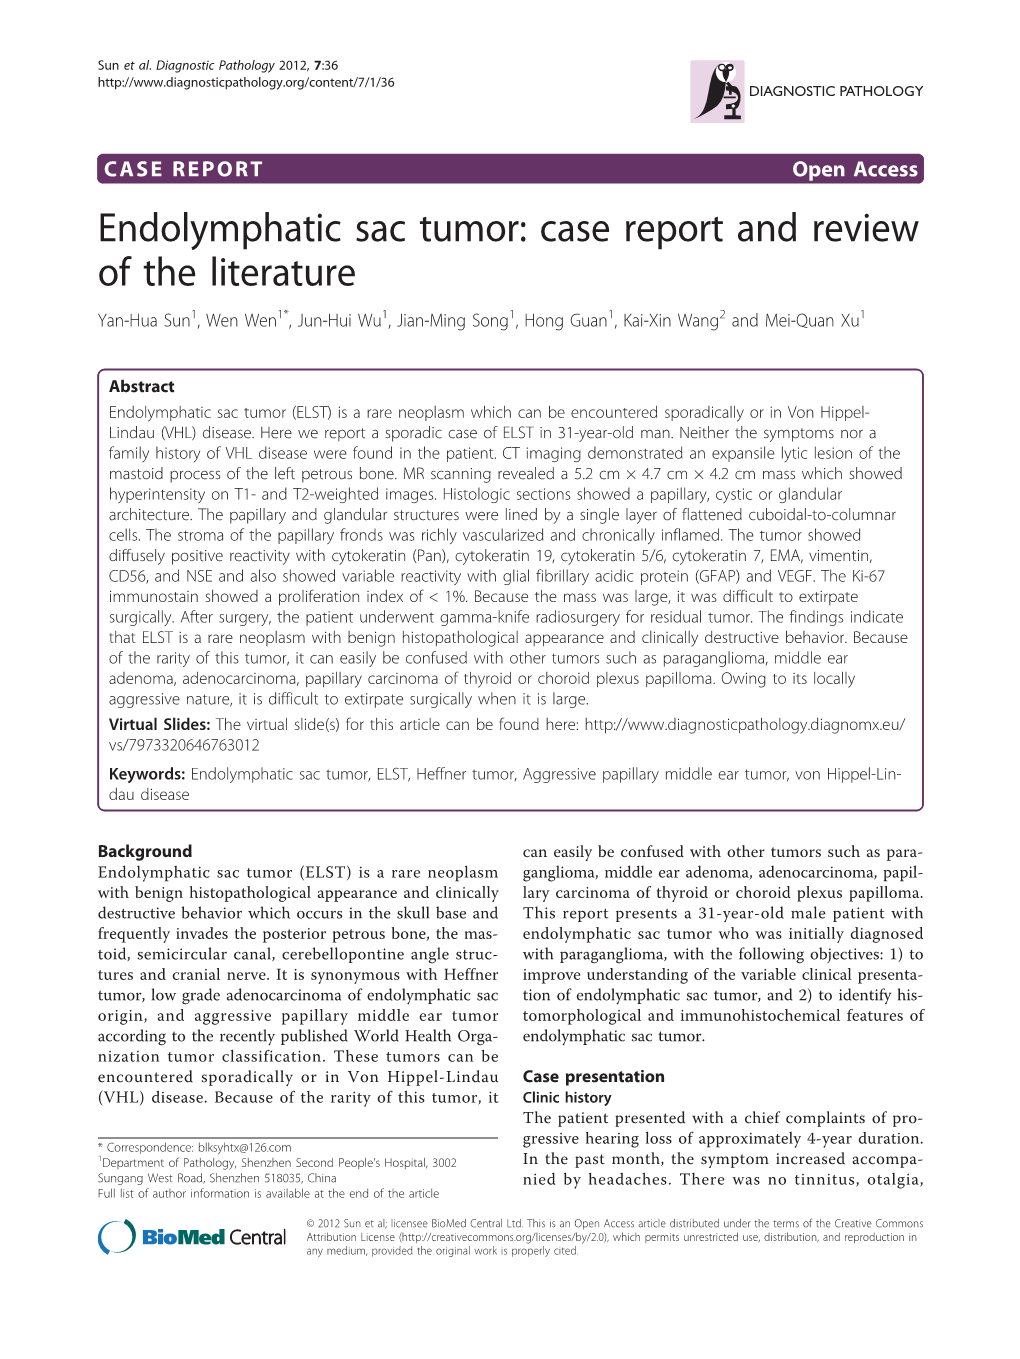 Endolymphatic Sac Tumor: Case Report and Review of the Literature Yan-Hua Sun1, Wen Wen1*, Jun-Hui Wu1, Jian-Ming Song1, Hong Guan1, Kai-Xin Wang2 and Mei-Quan Xu1